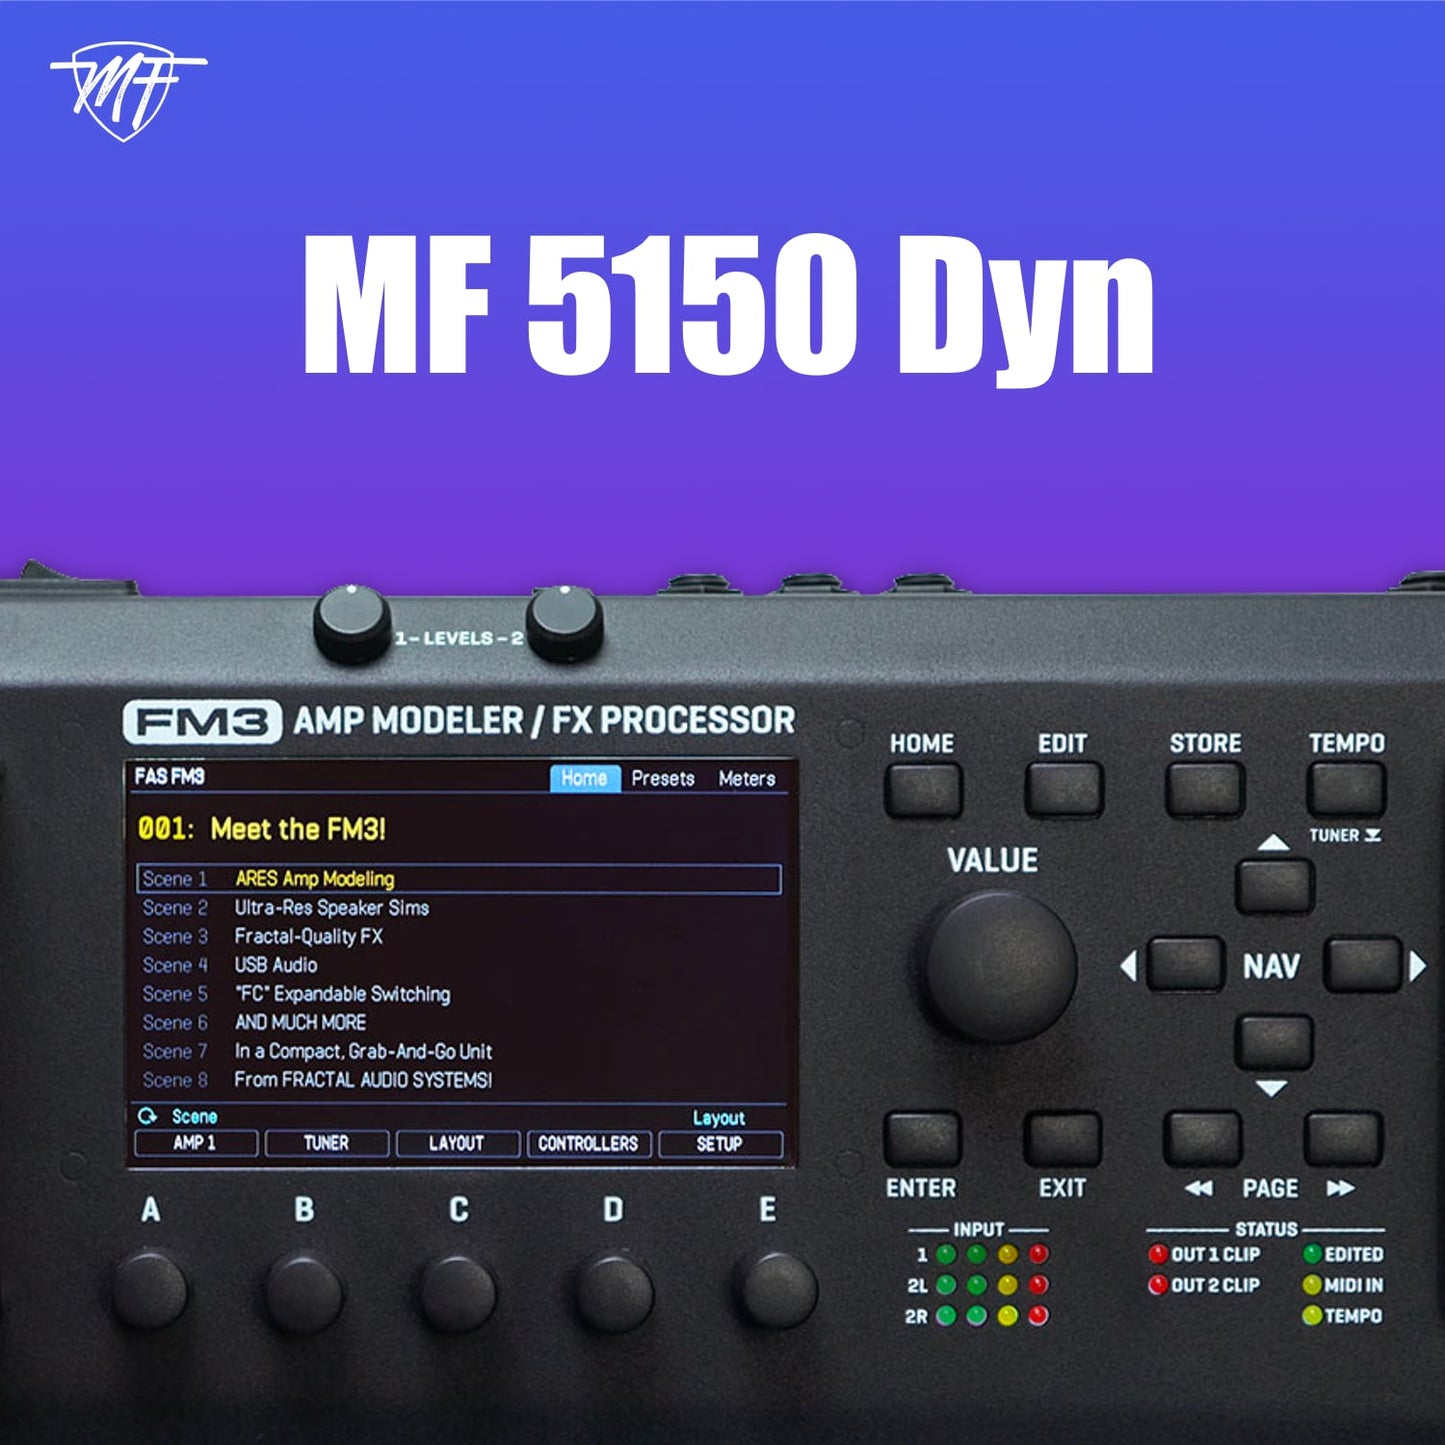 MF 5150 Dyn FM3